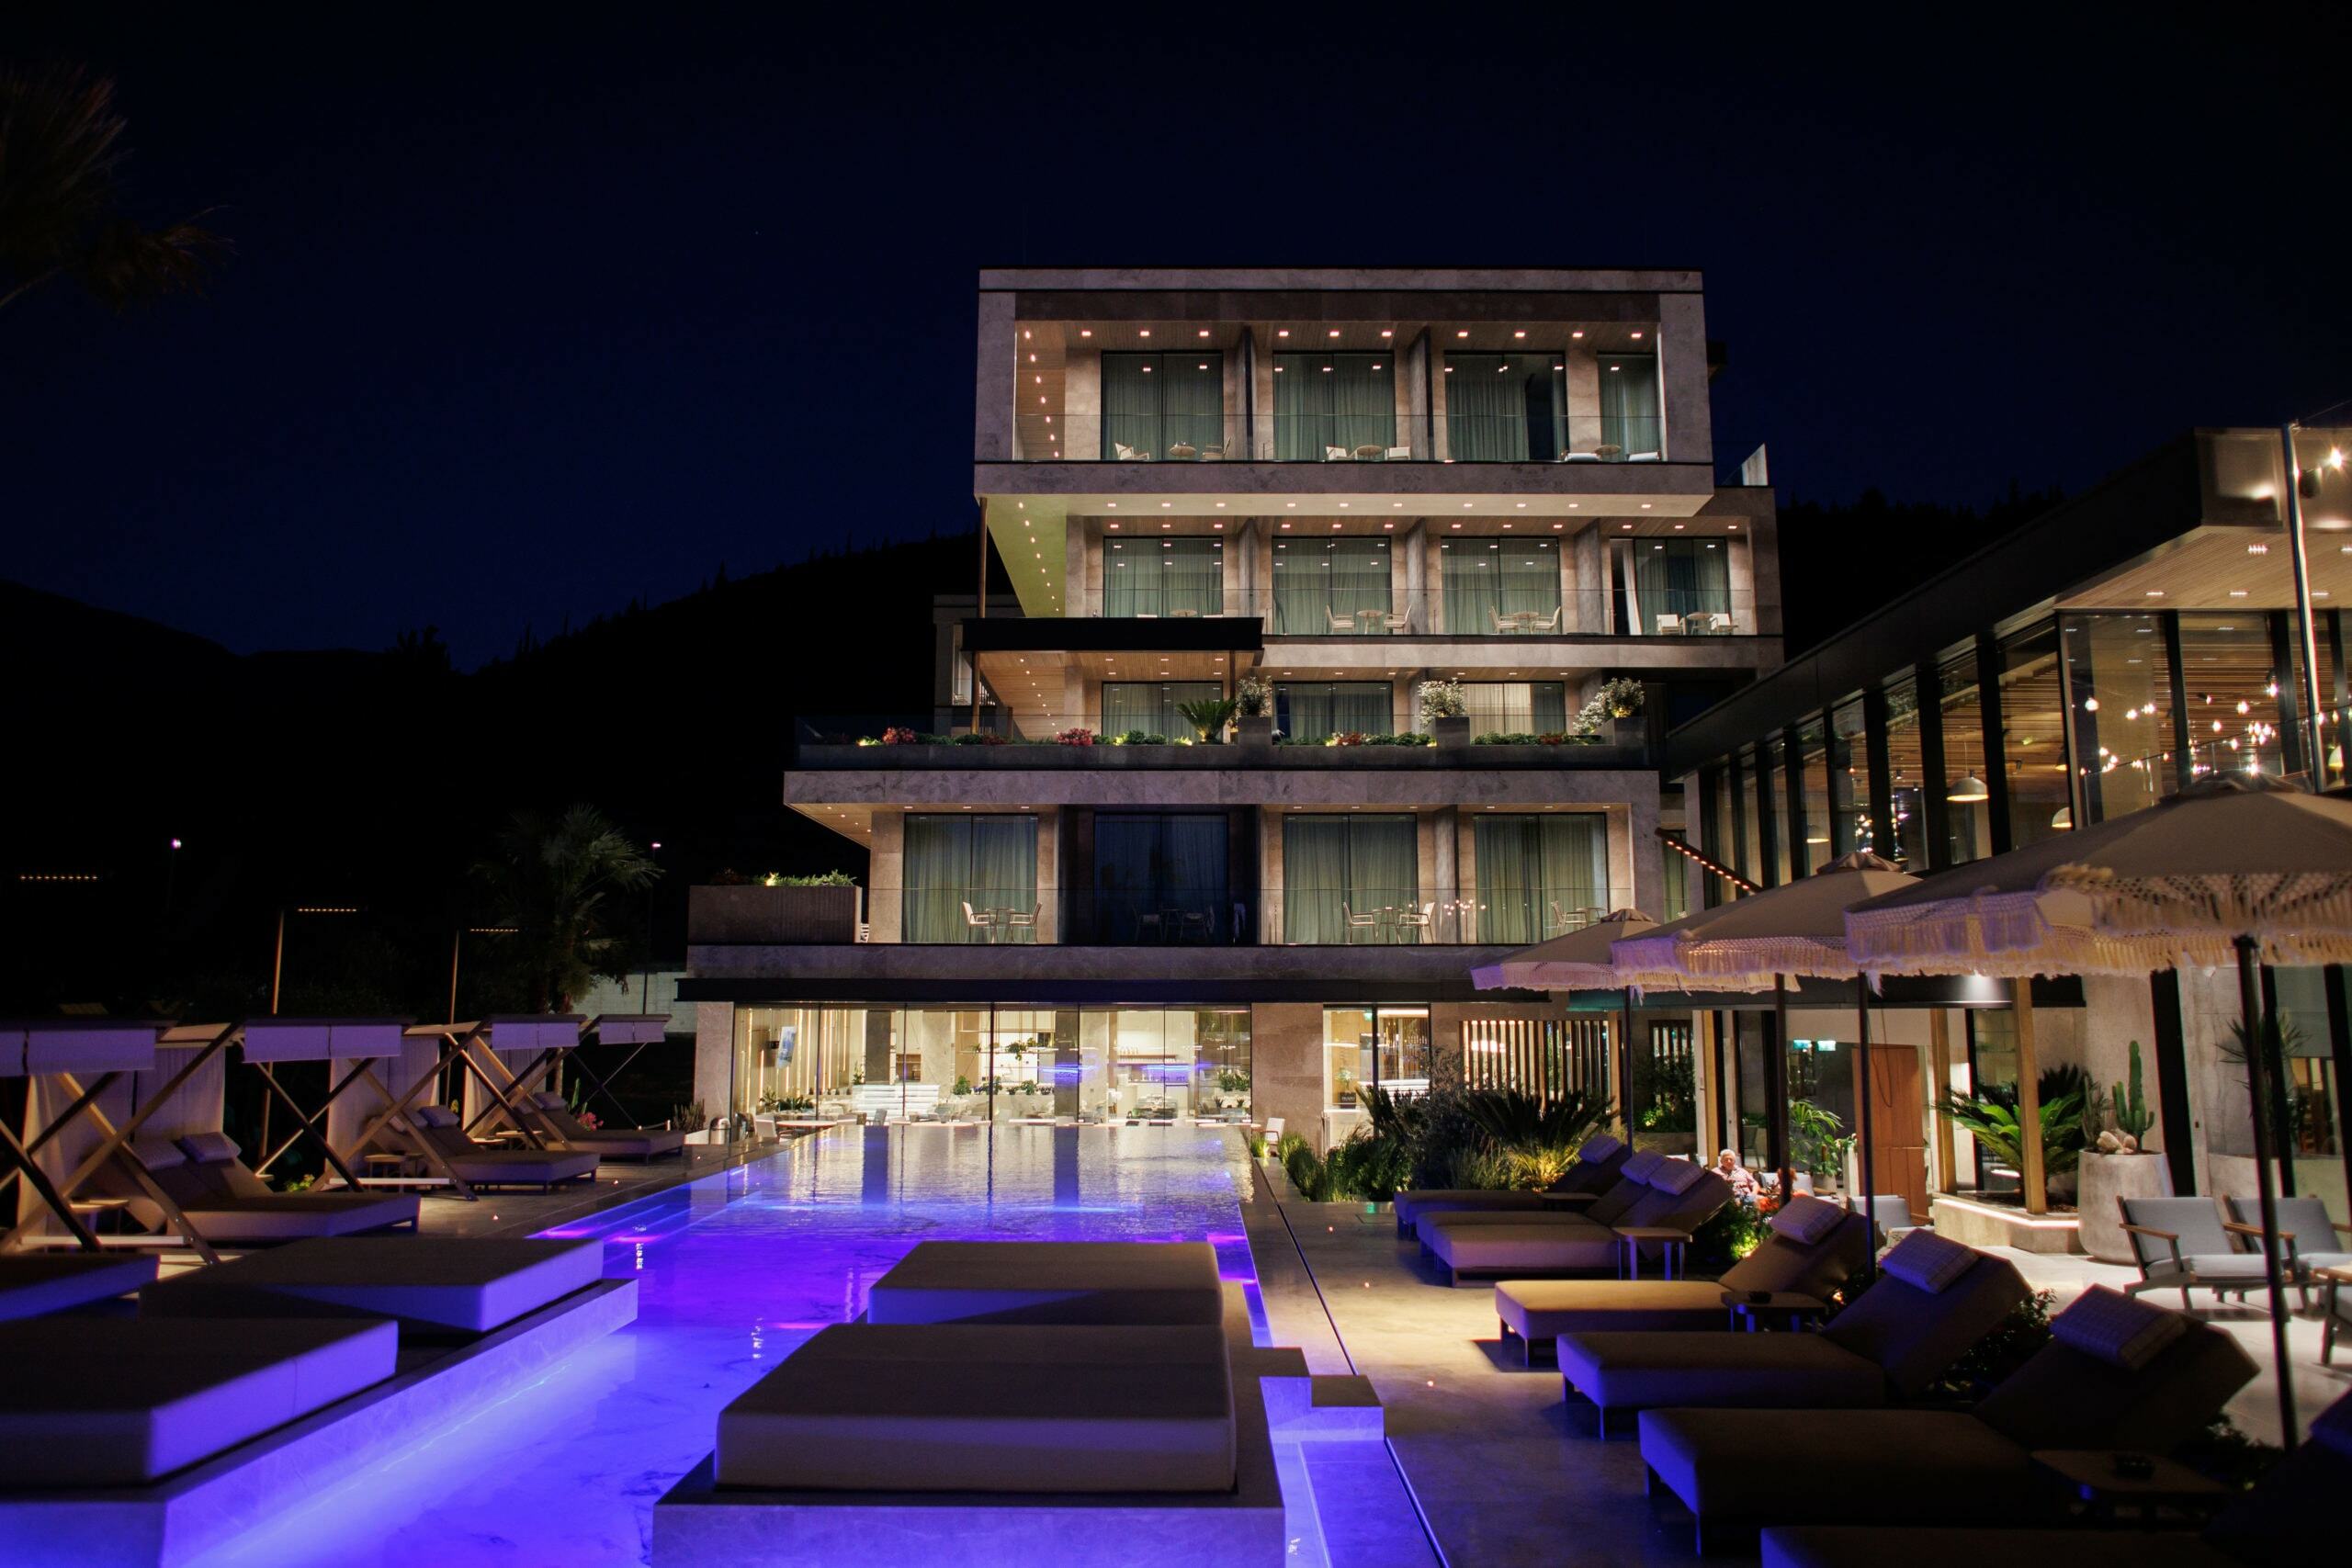 prado_luxury_hotel_night_view